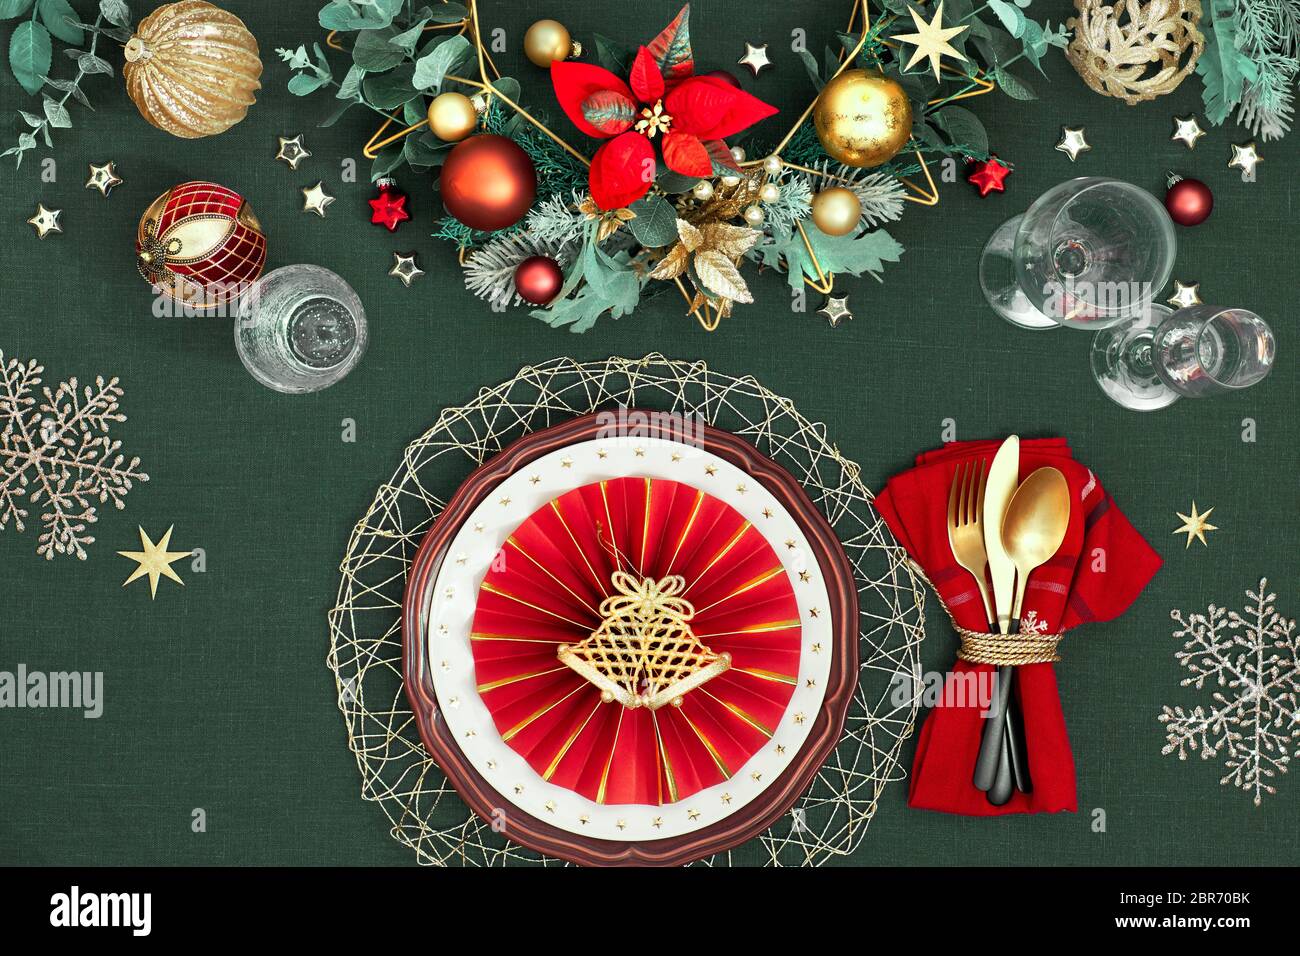 Tavolo di Natale con piatti bianchi di colore rosso scuro, anello di carta rossa e poinsettia, utensili dorati. Decorazioni dorate, rosse, verdi e dorate. Disposizione piatta o Foto Stock